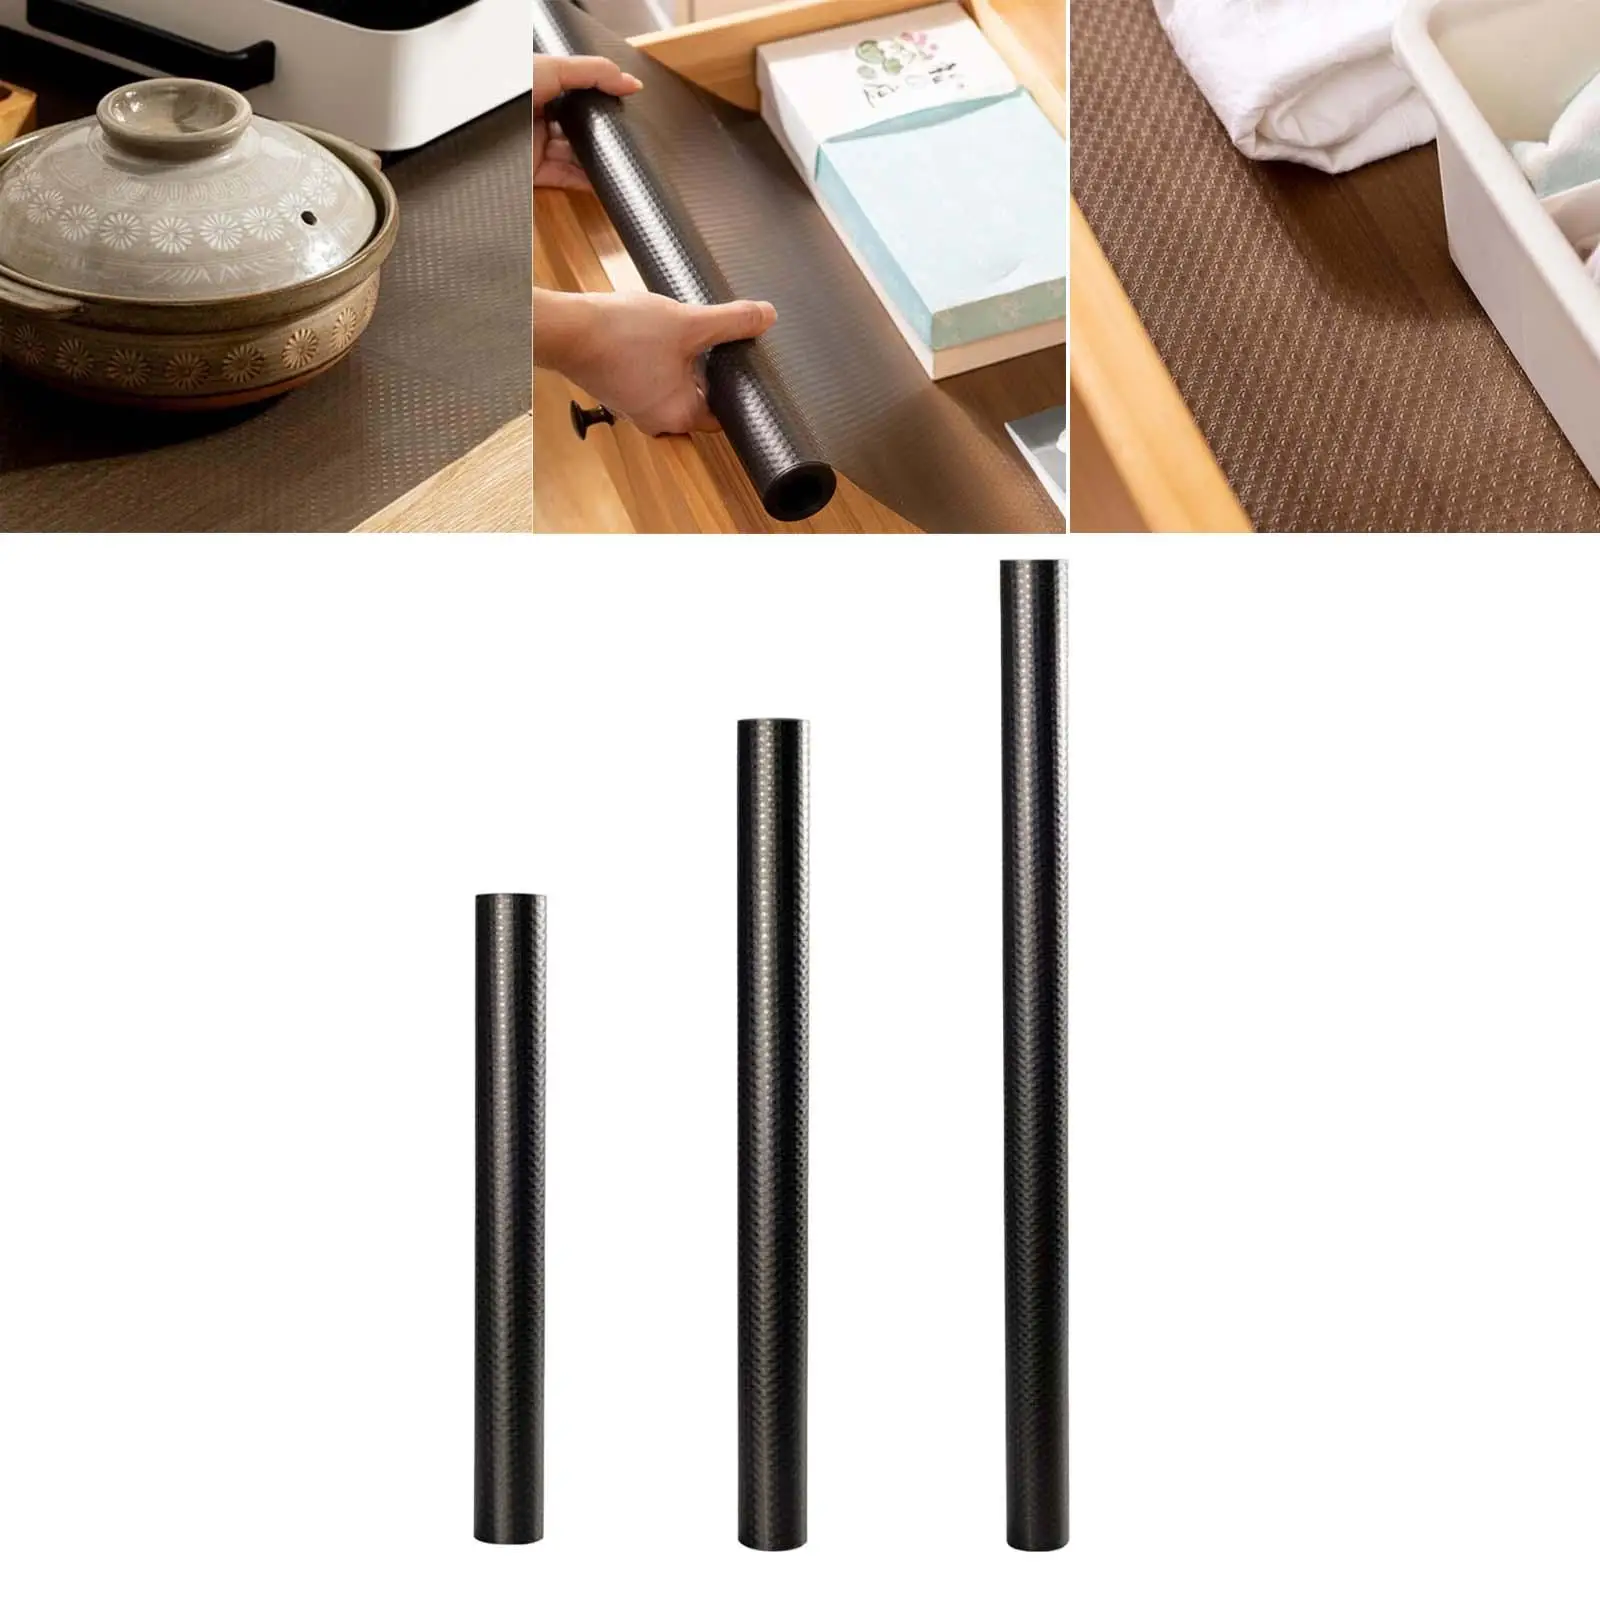 Black Drawer Shelf Liner Non Slip Furniture Protector Fridge Mat Table